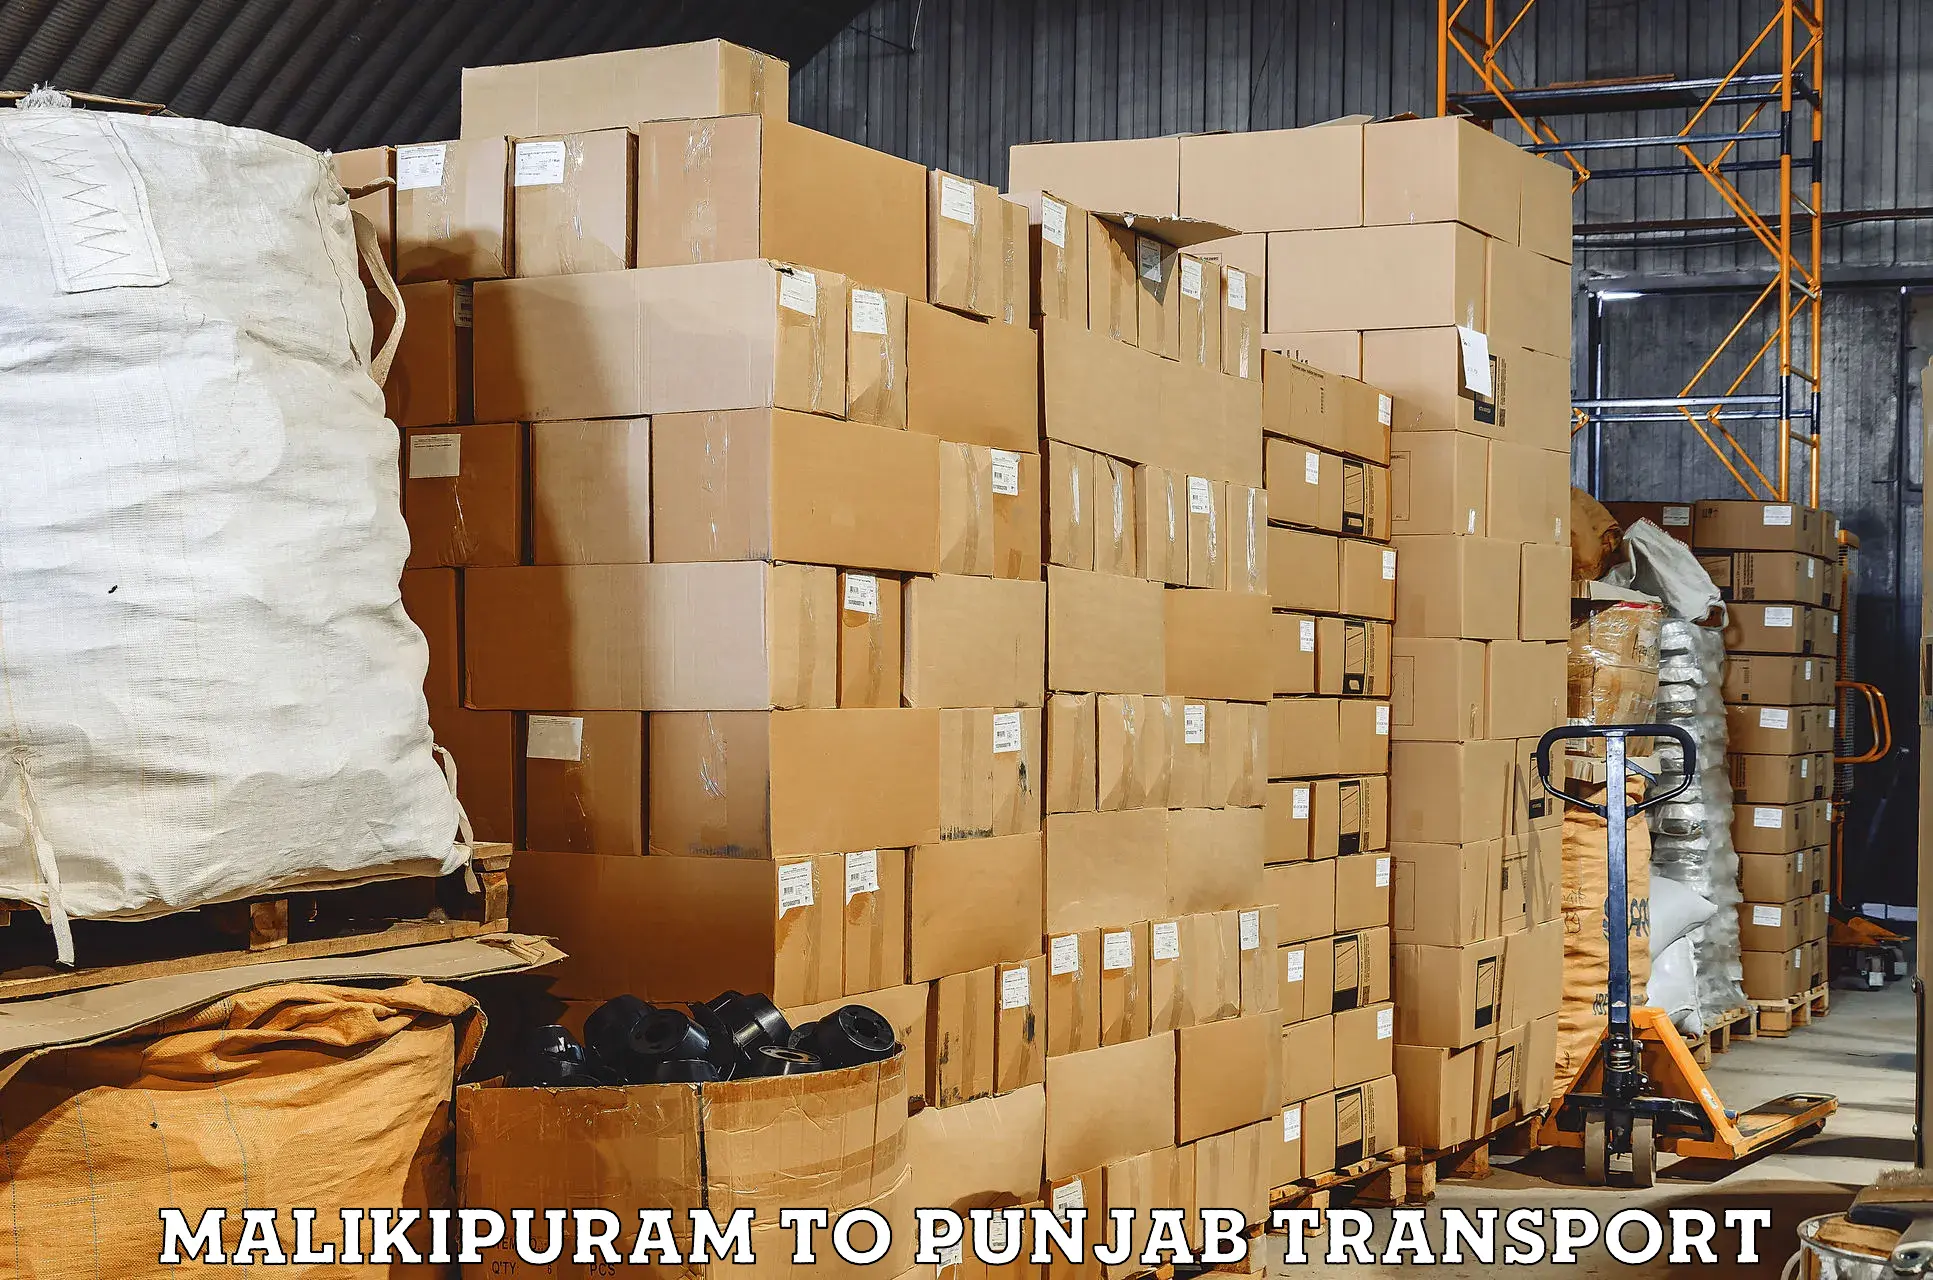 Furniture transport service Malikipuram to Tarsikka